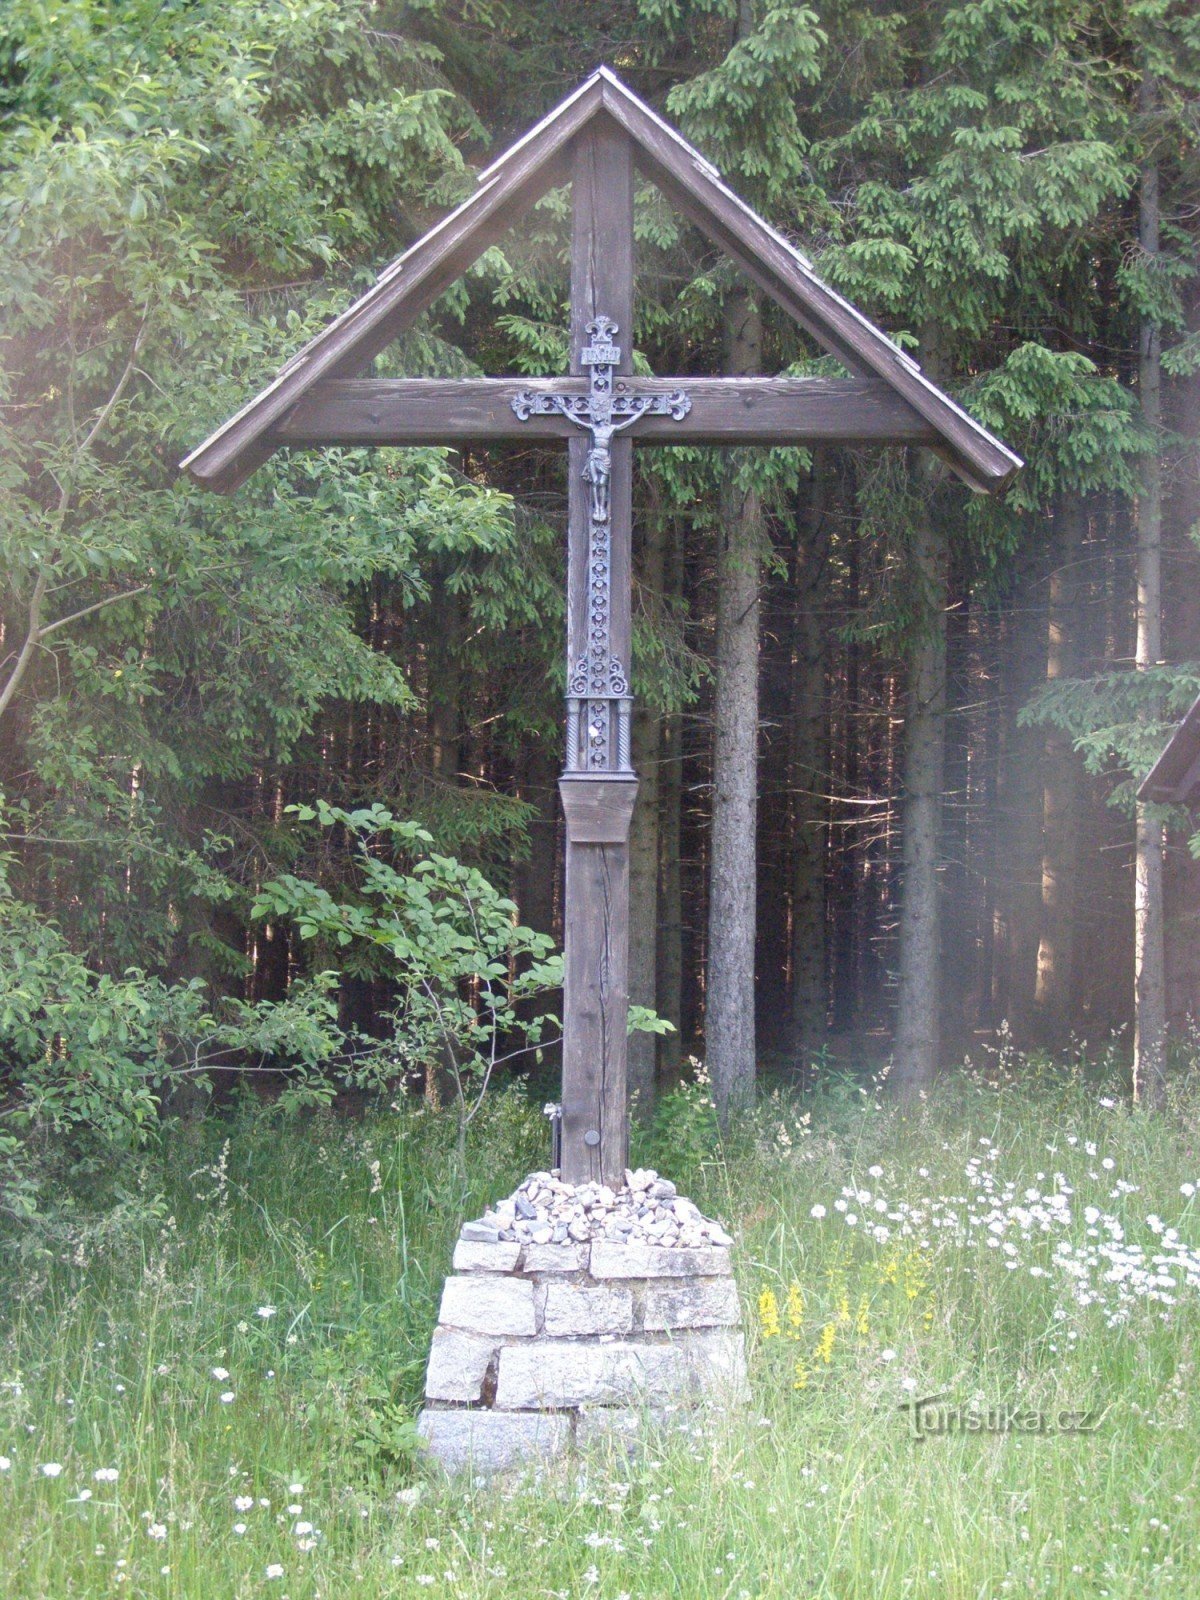 Videl sadel - Videl cross